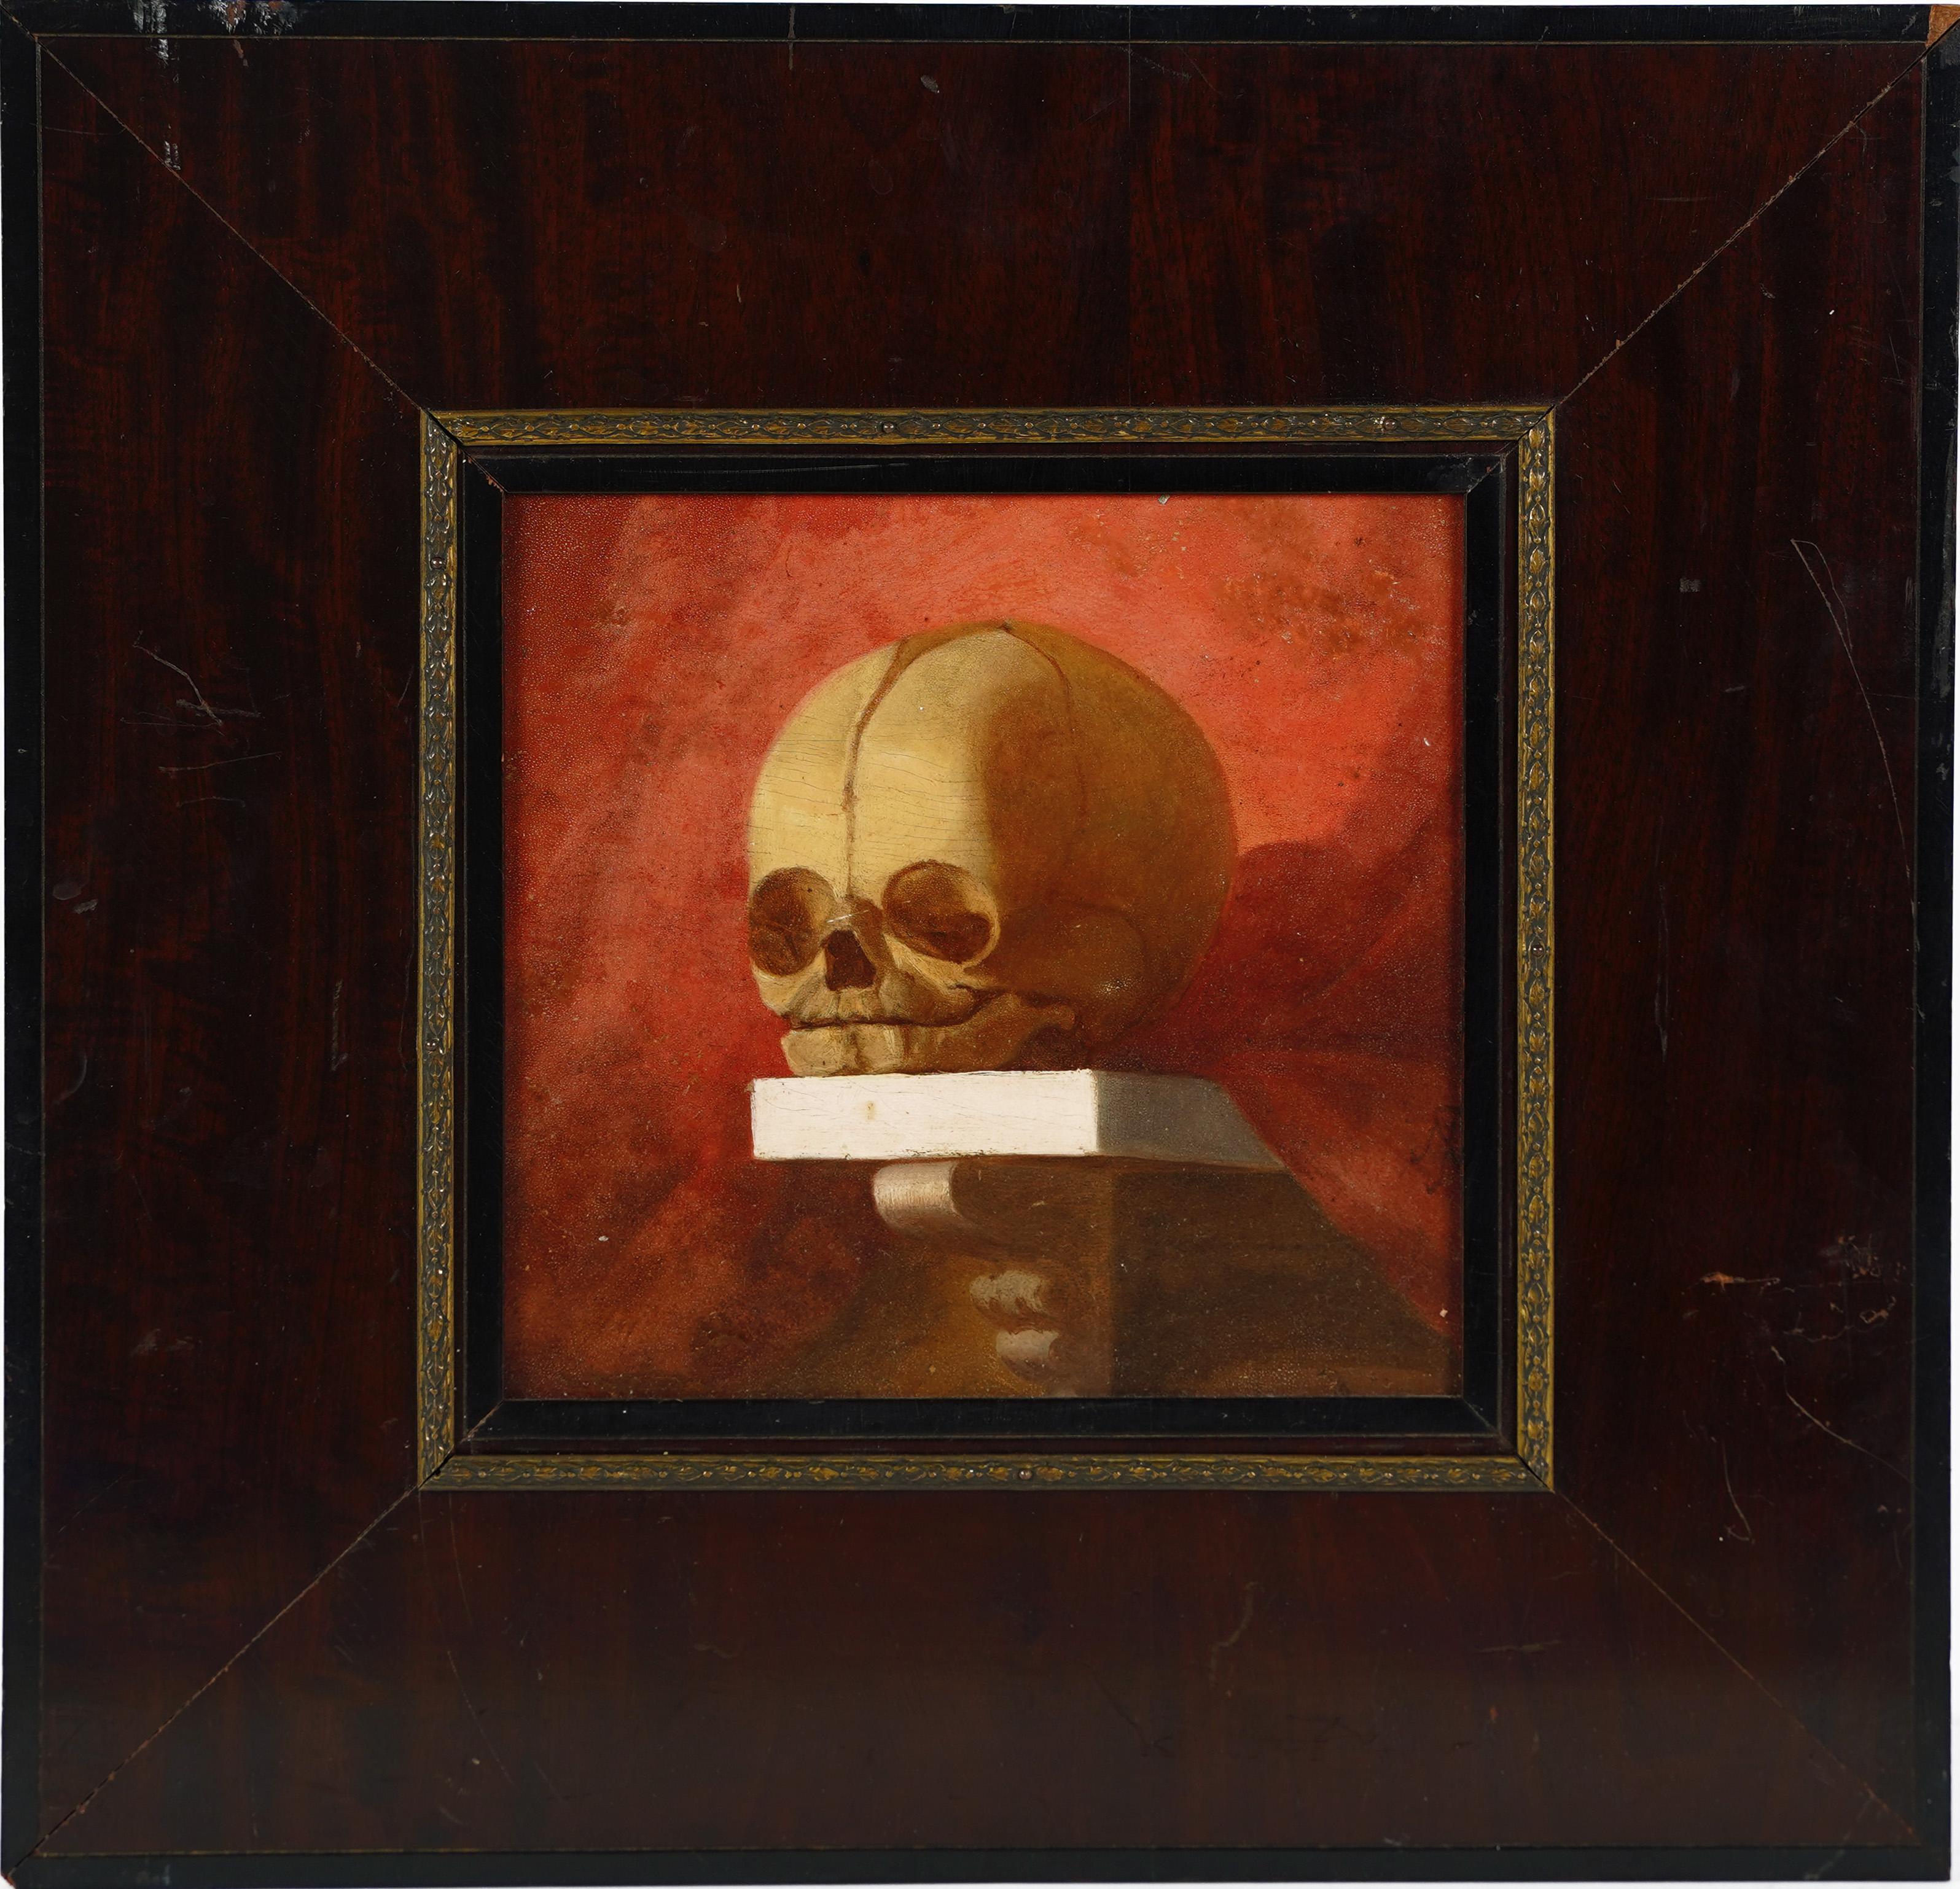  Antikes Stillleben mit menschlichem Totenkopf aus der amerikanischen Schule, Memento Mori, 19. Jahrhundert – Painting von Unknown